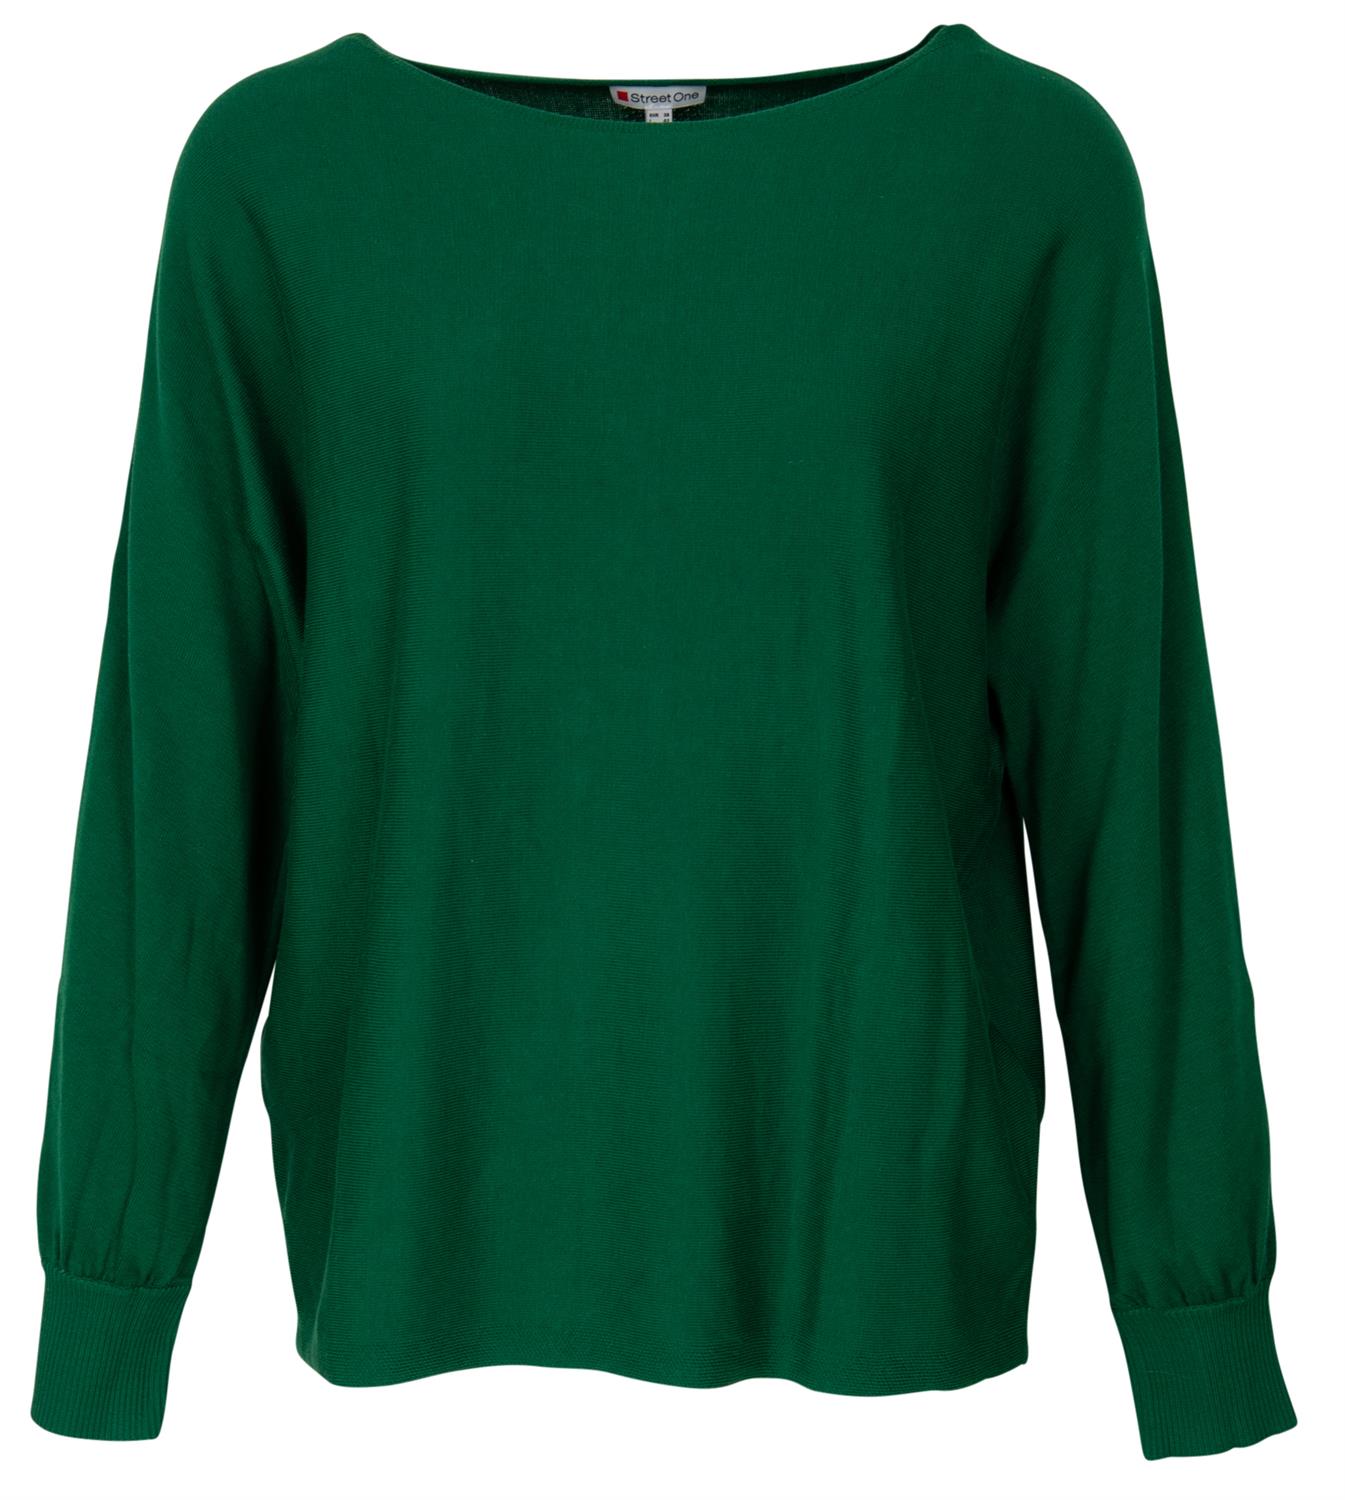 Street One Damen Pullover Pullover in Unifarbe frosty green melange bequem  online kaufen bei